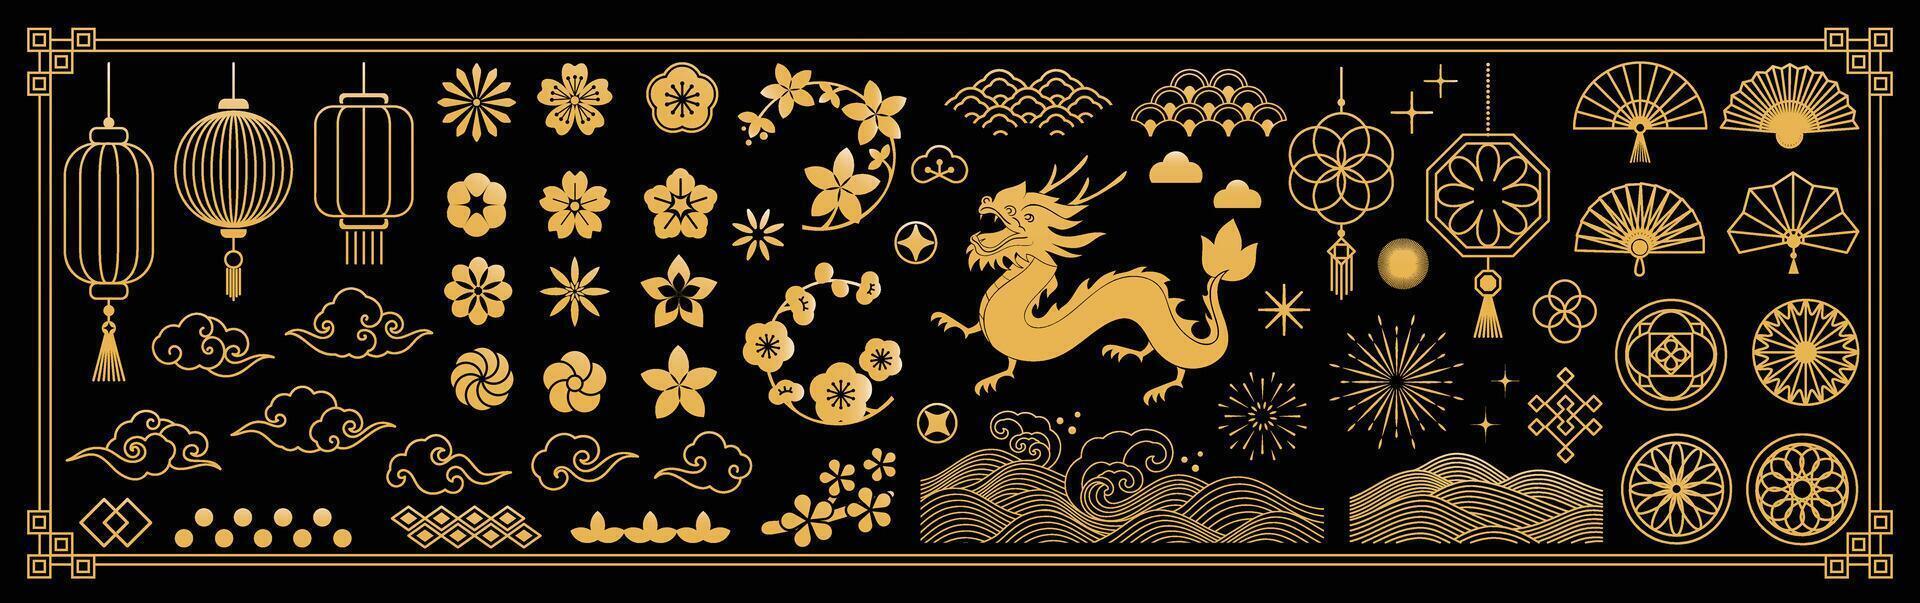 chino nuevo año íconos vector colocar. Cereza florecer flor, linterna, continuar, mar ola, nube aislado icono de asiático lunar nuevo año fiesta decoración vector. oriental cultura tradicion ilustración.